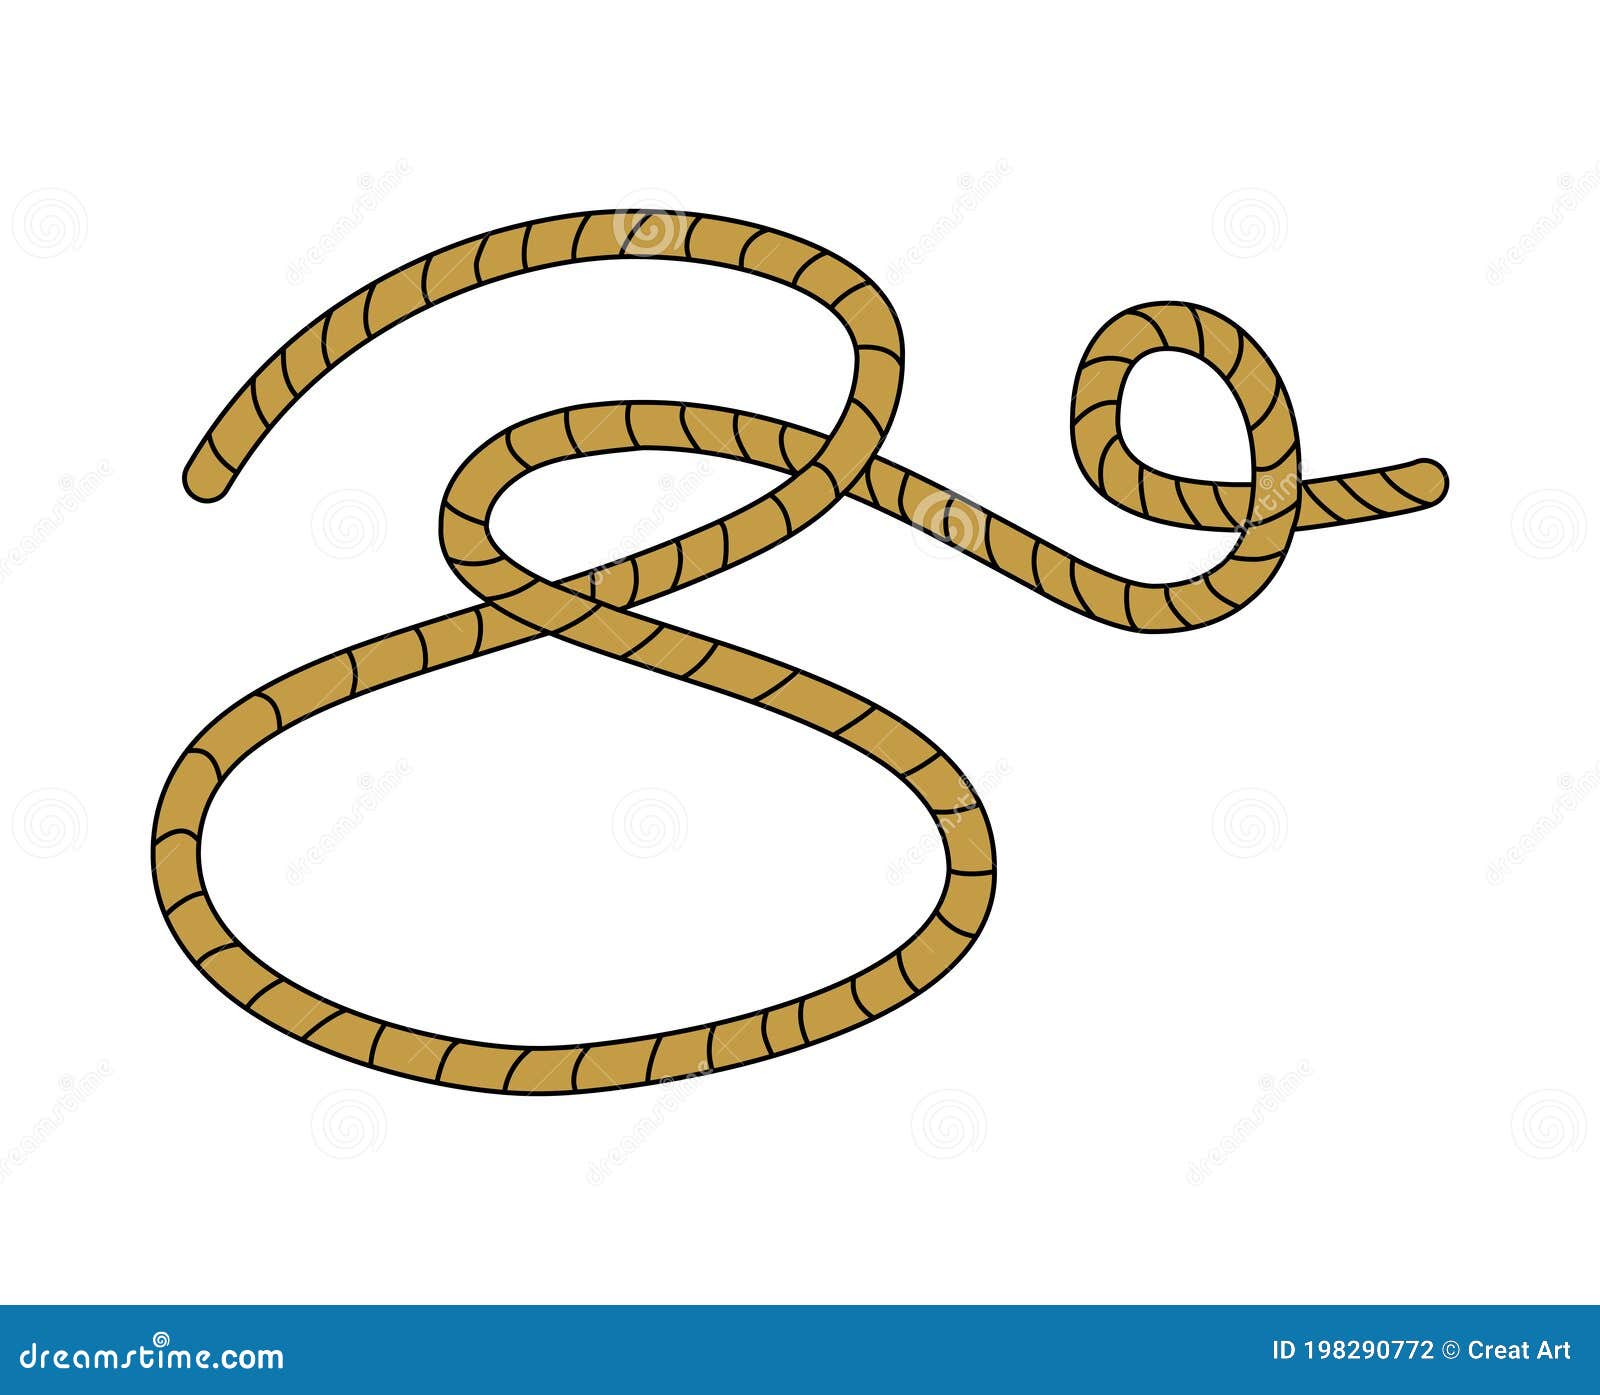 Rope Clip Art Vector Illustartion Stock Vector Illustration Of